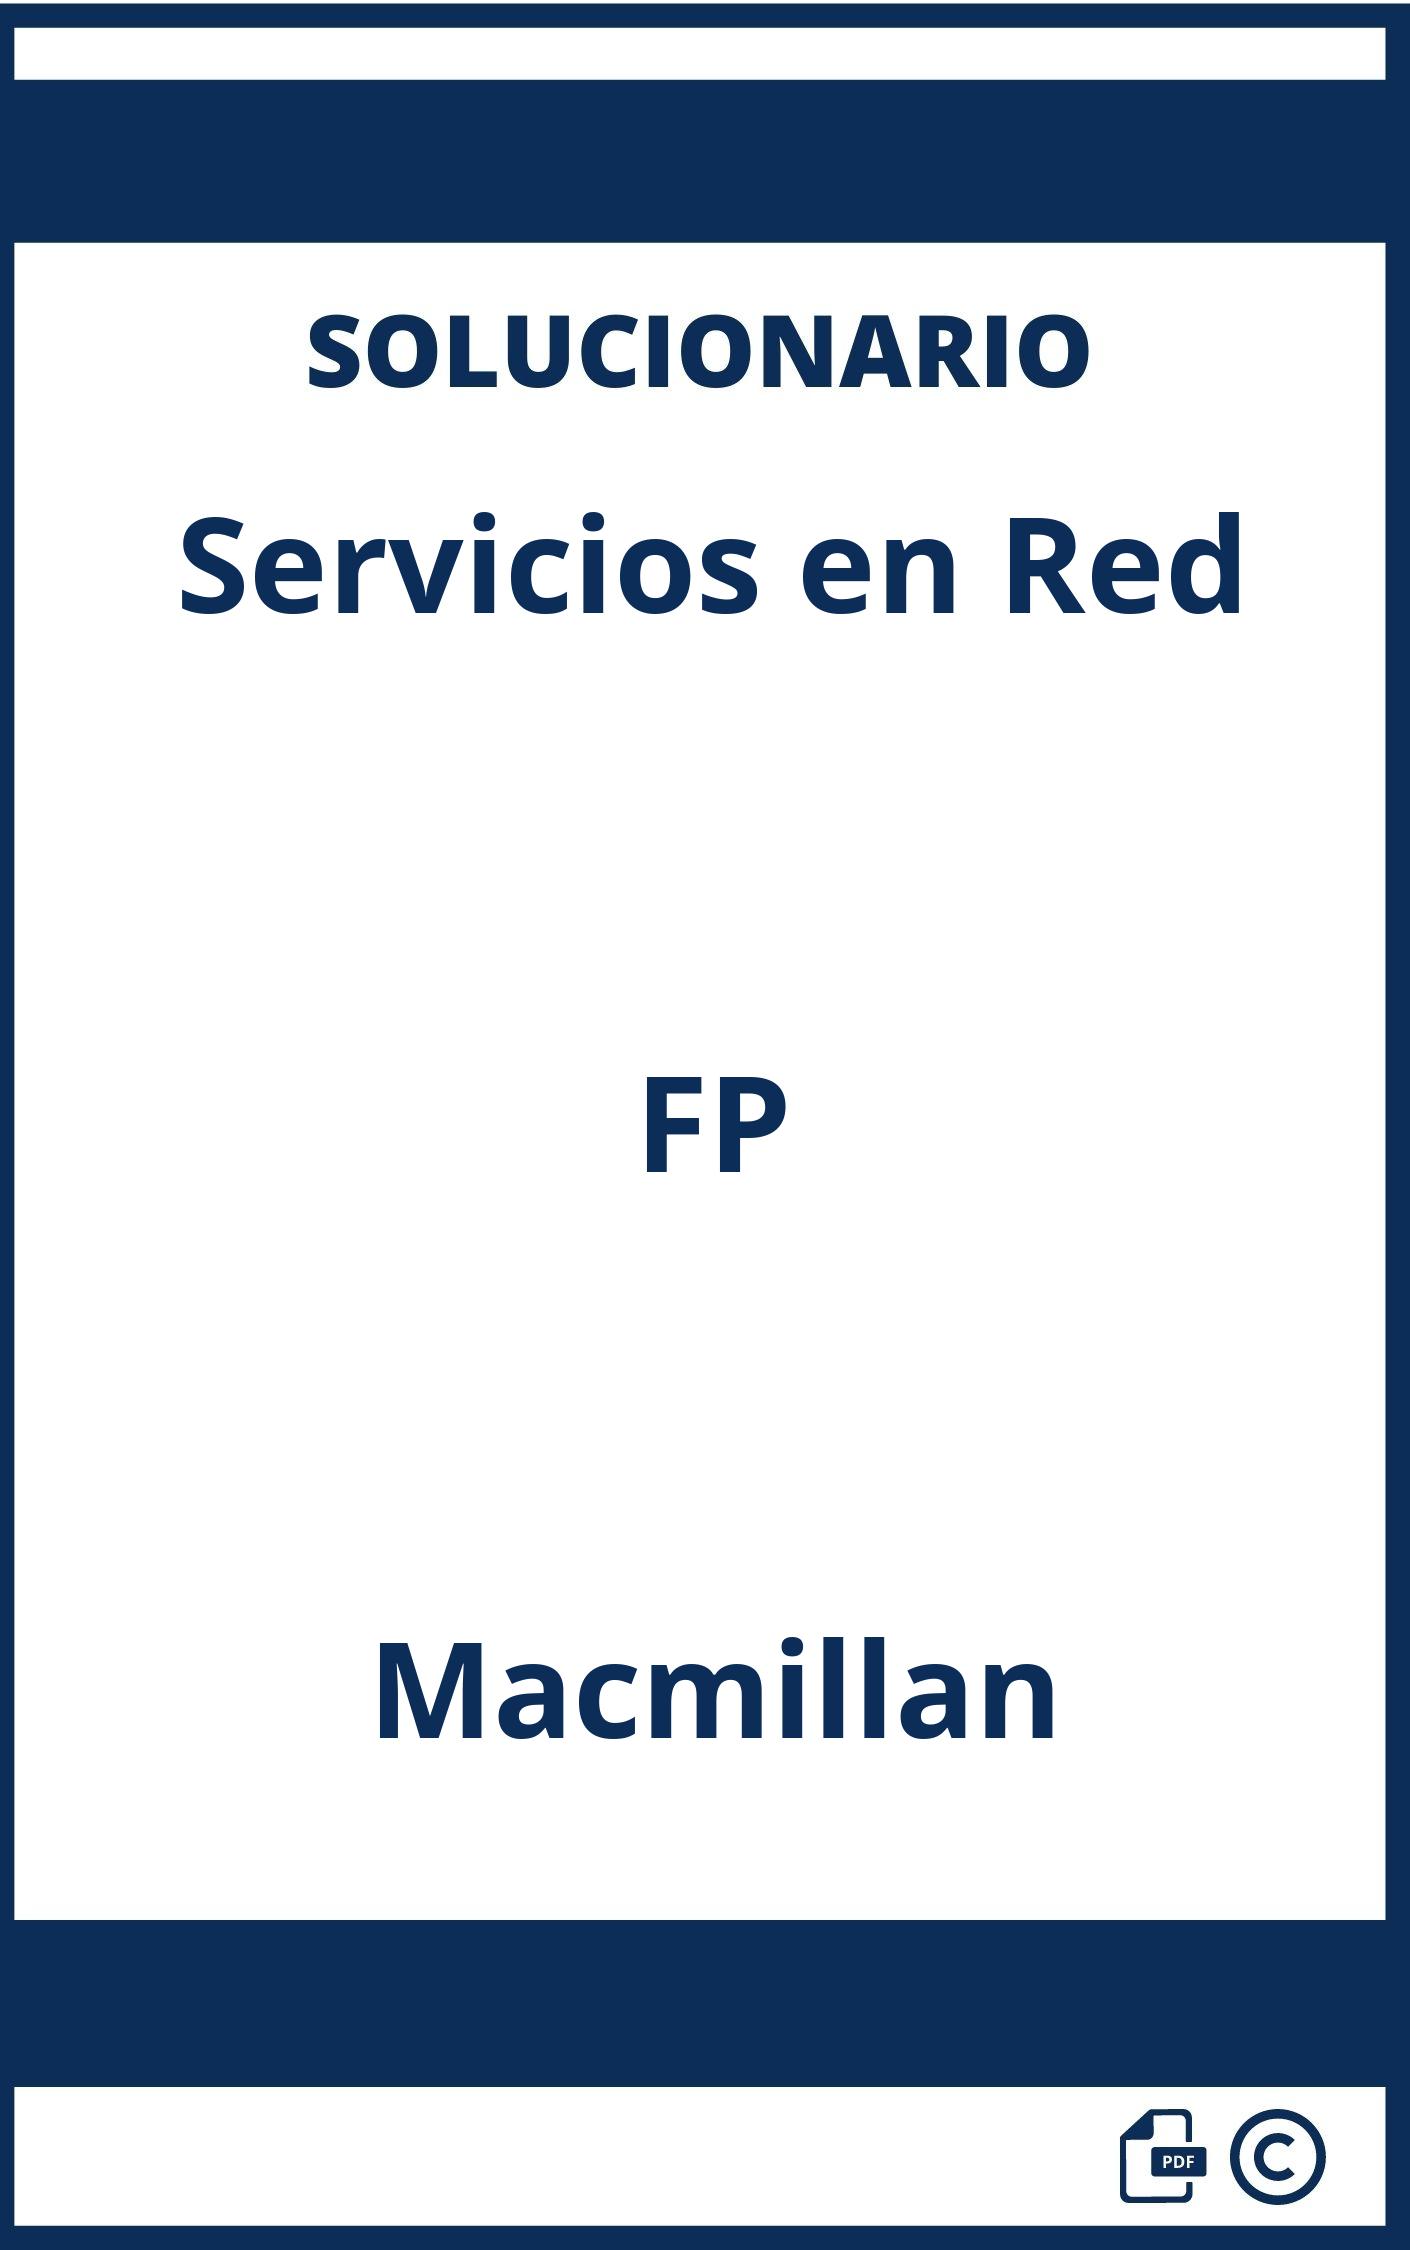 Solucionario Servicios en Red FP Macmillan